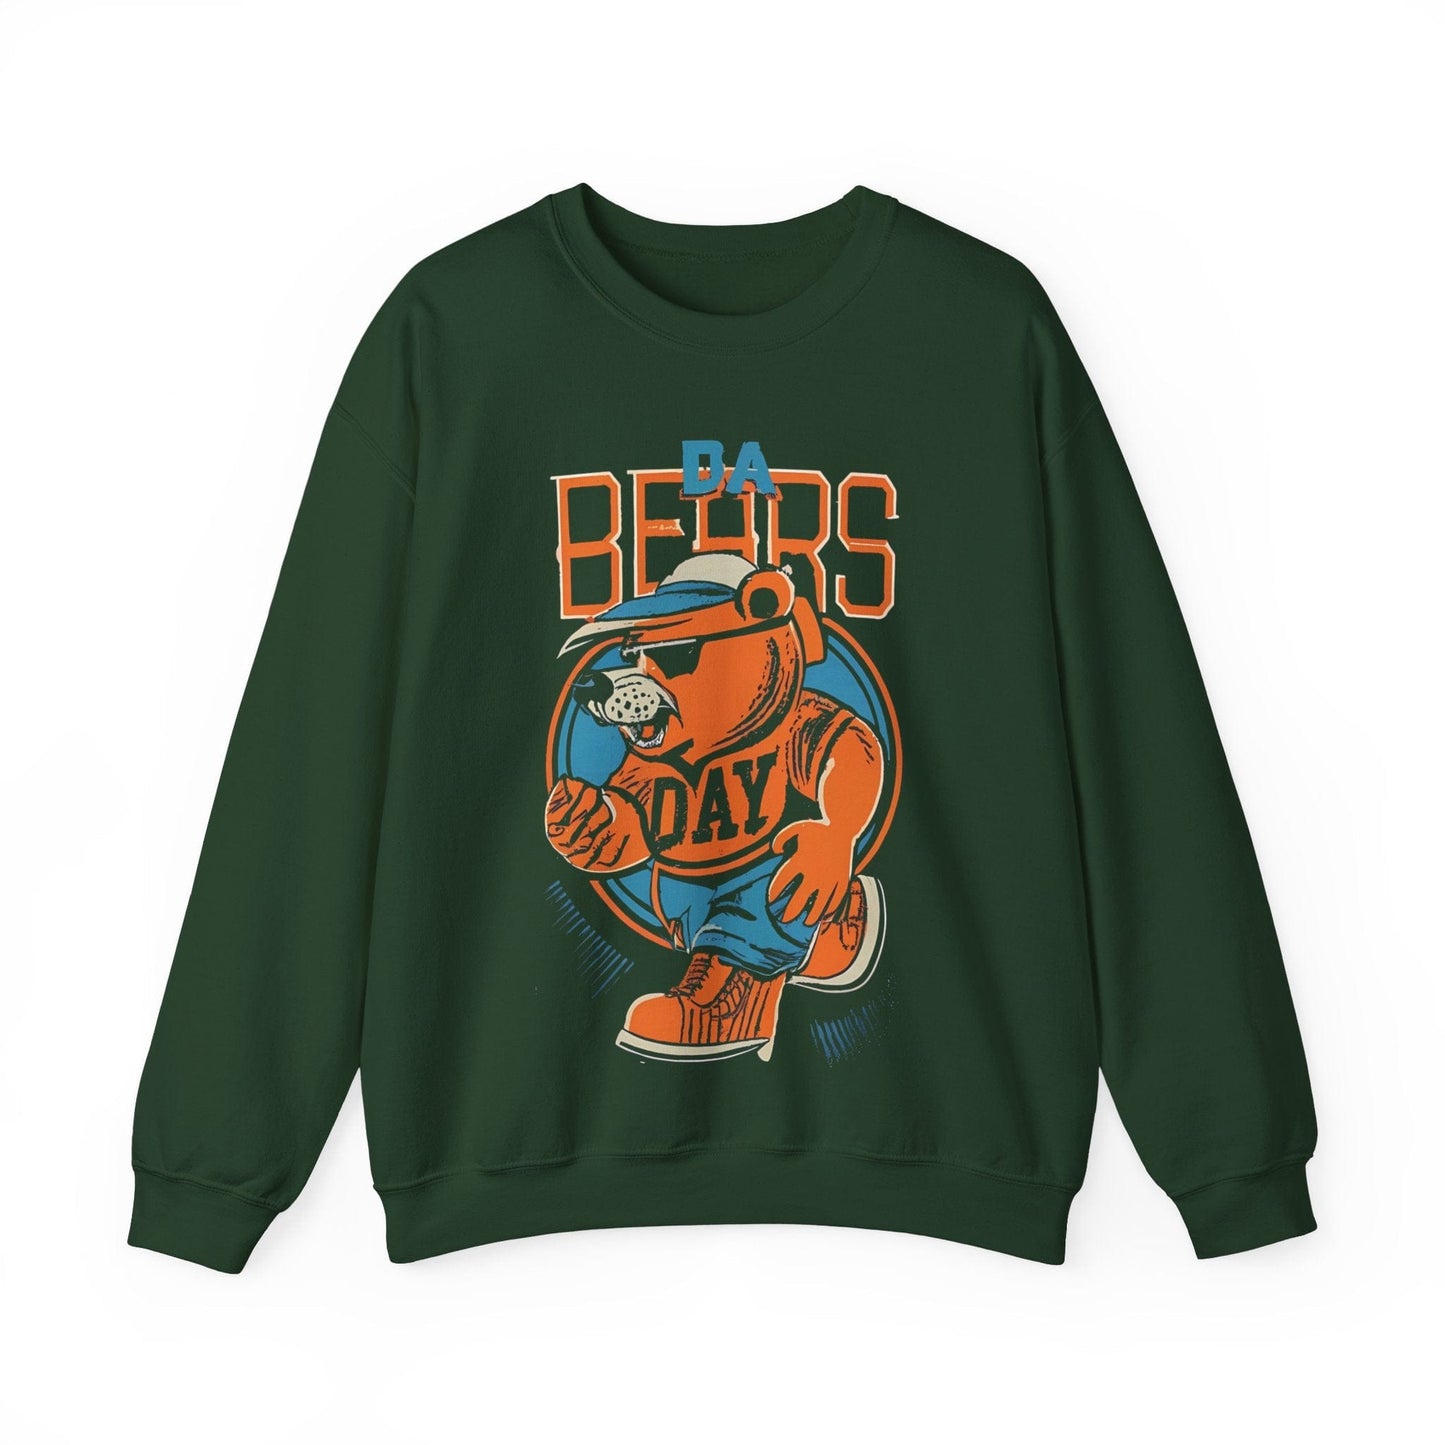 Sweatshirt S / Forest Green DA Bears Vintage Chicago Sweatshirt